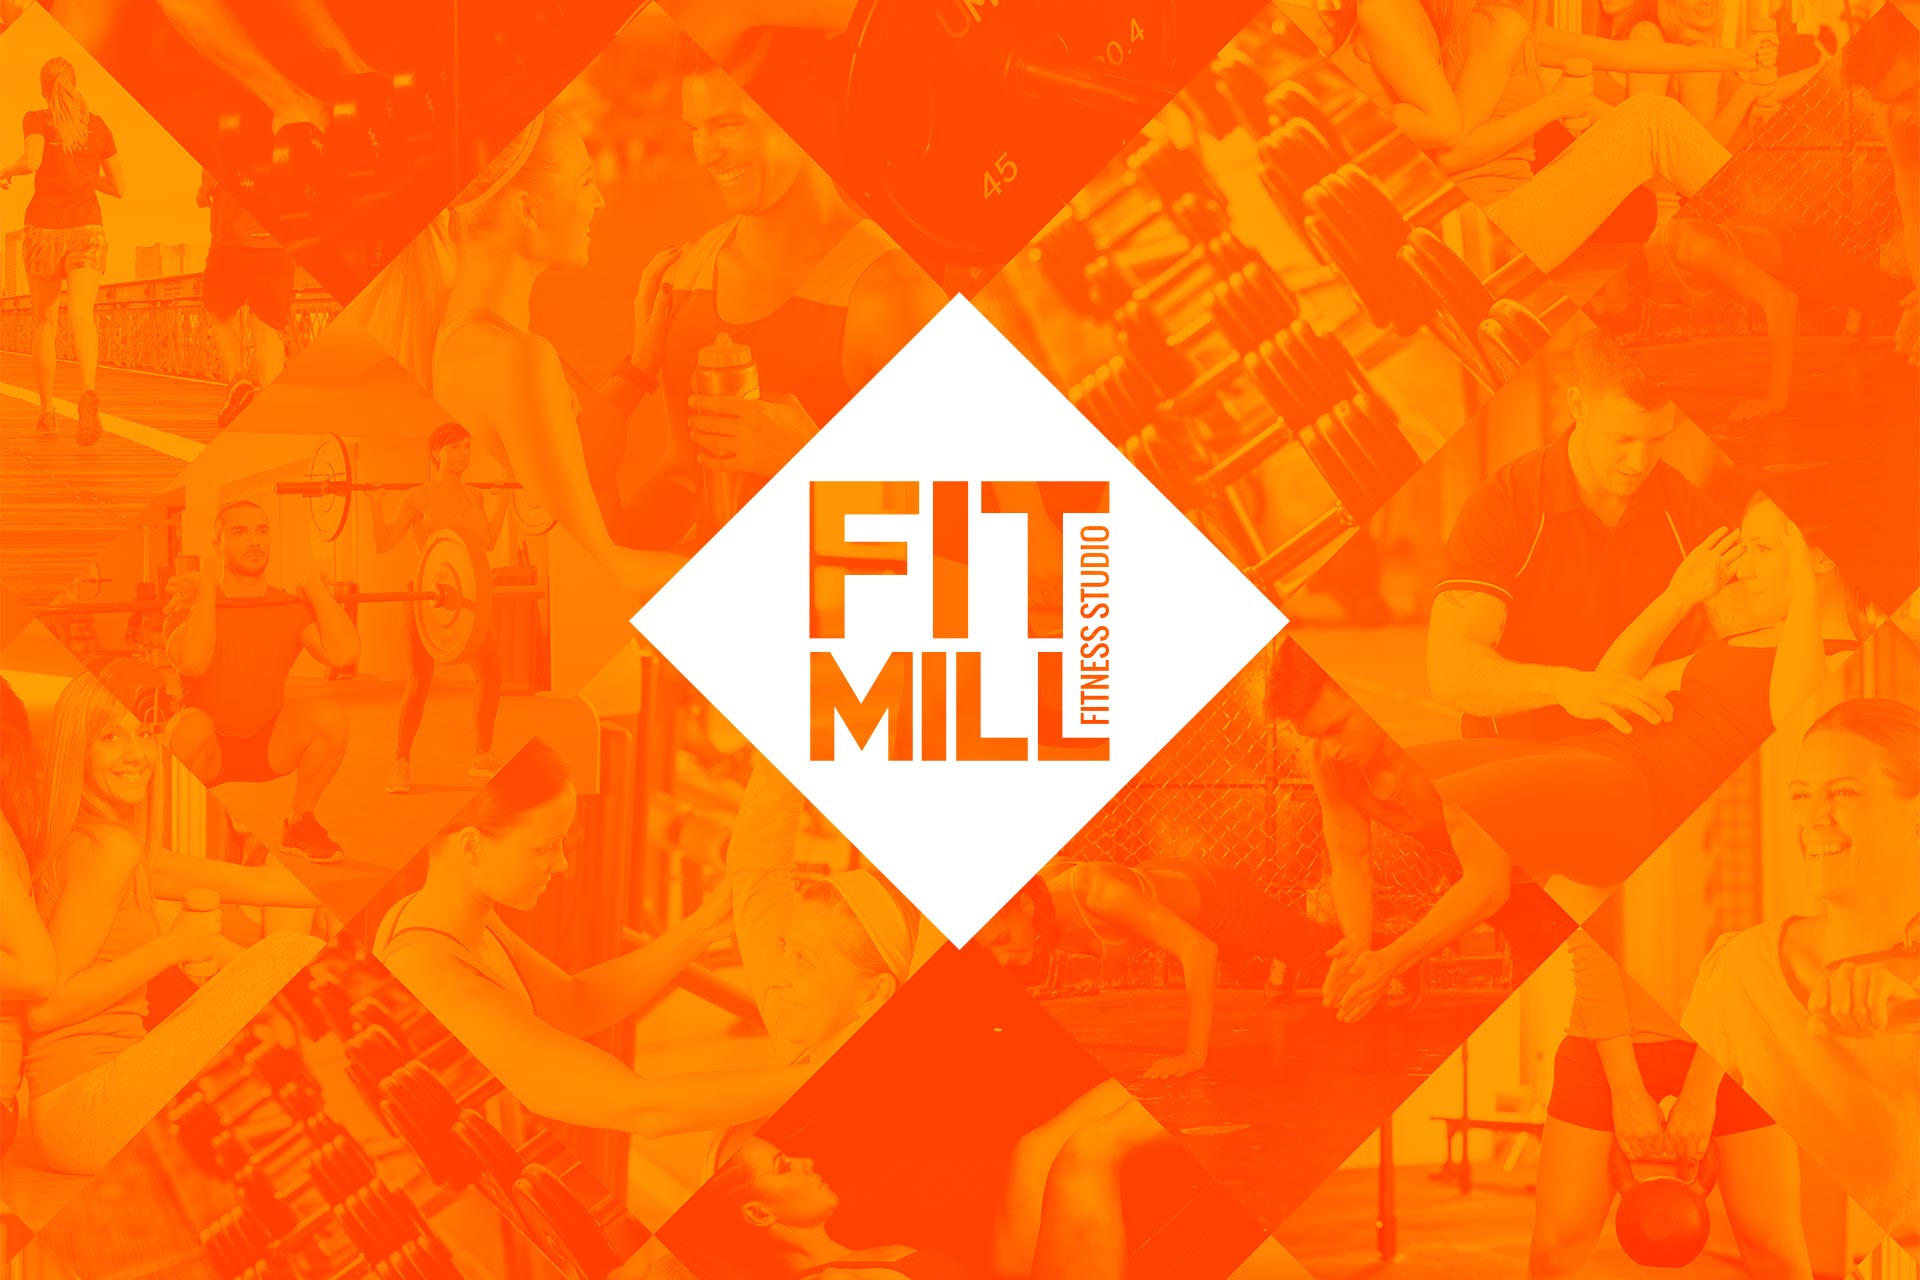 Fitmill logo